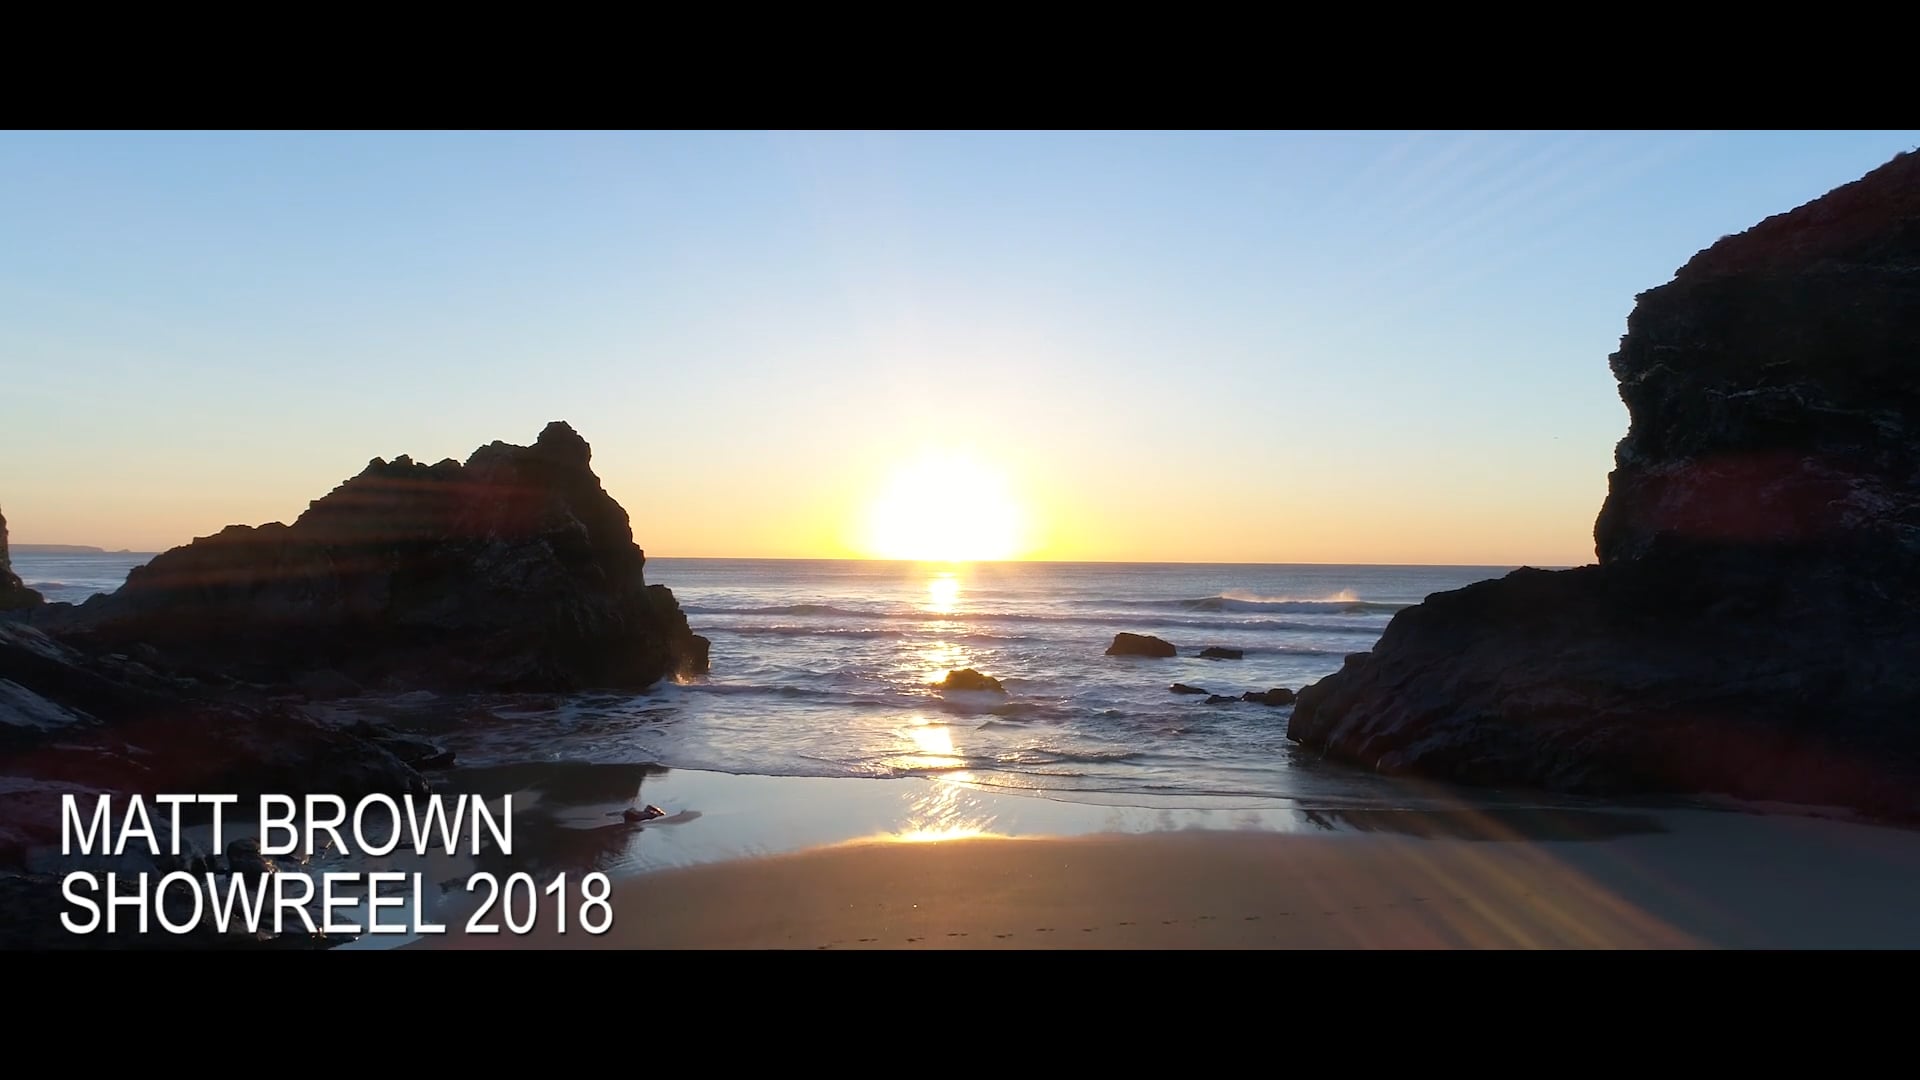 MATT BROWN SHOWREEL 2018